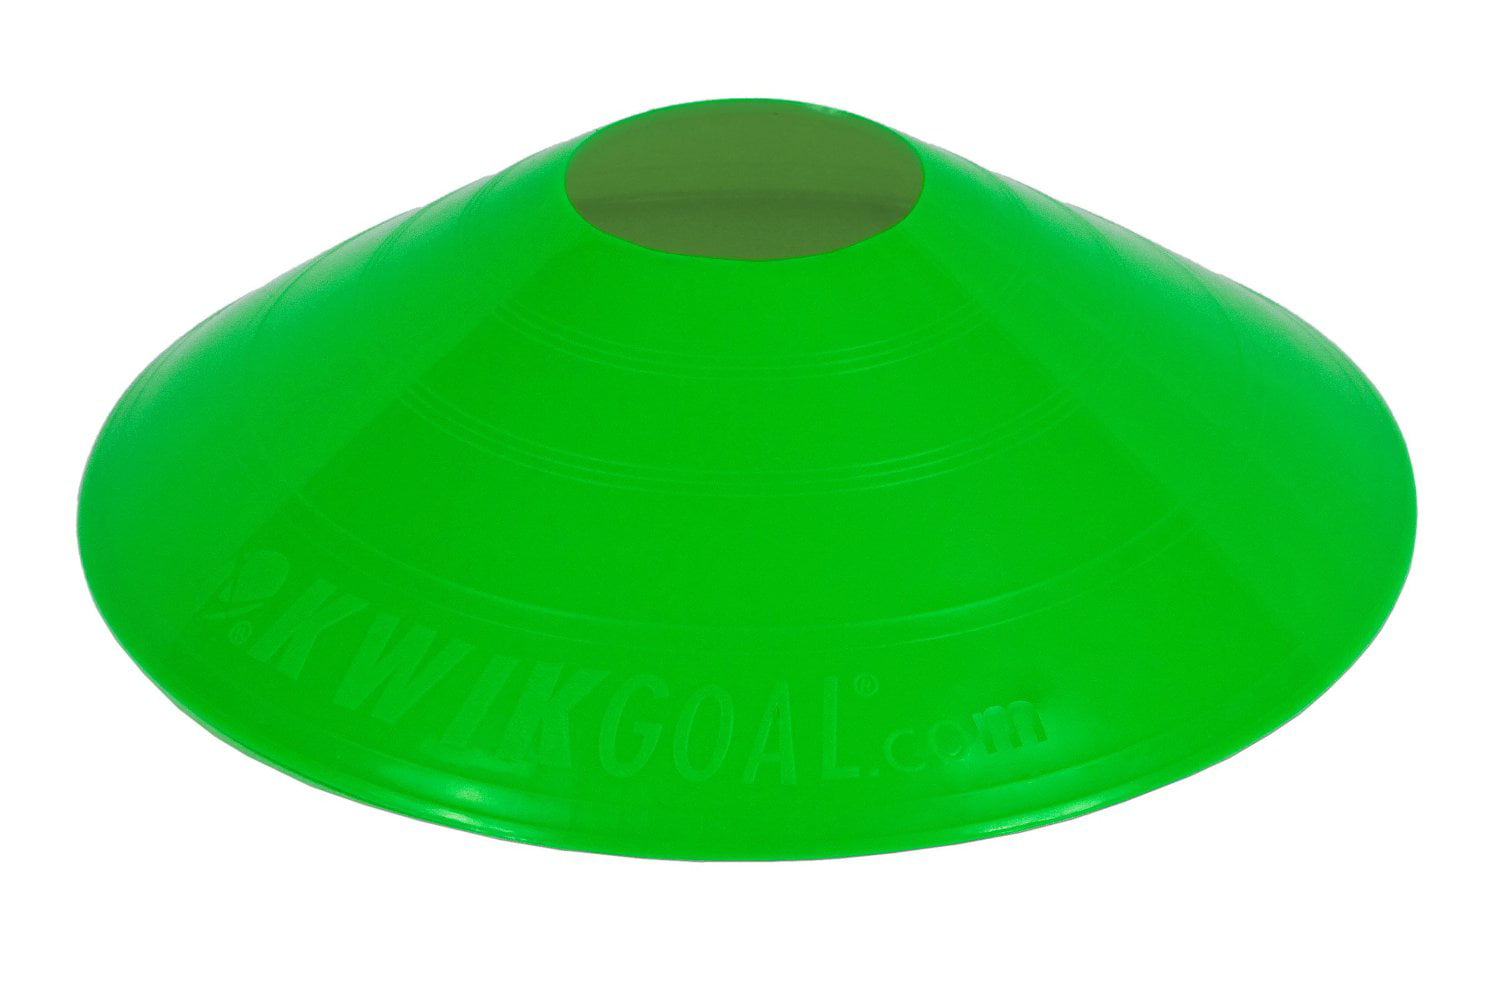 Kwik Small Disc Small Disc Soccer Cones - Walmart.com